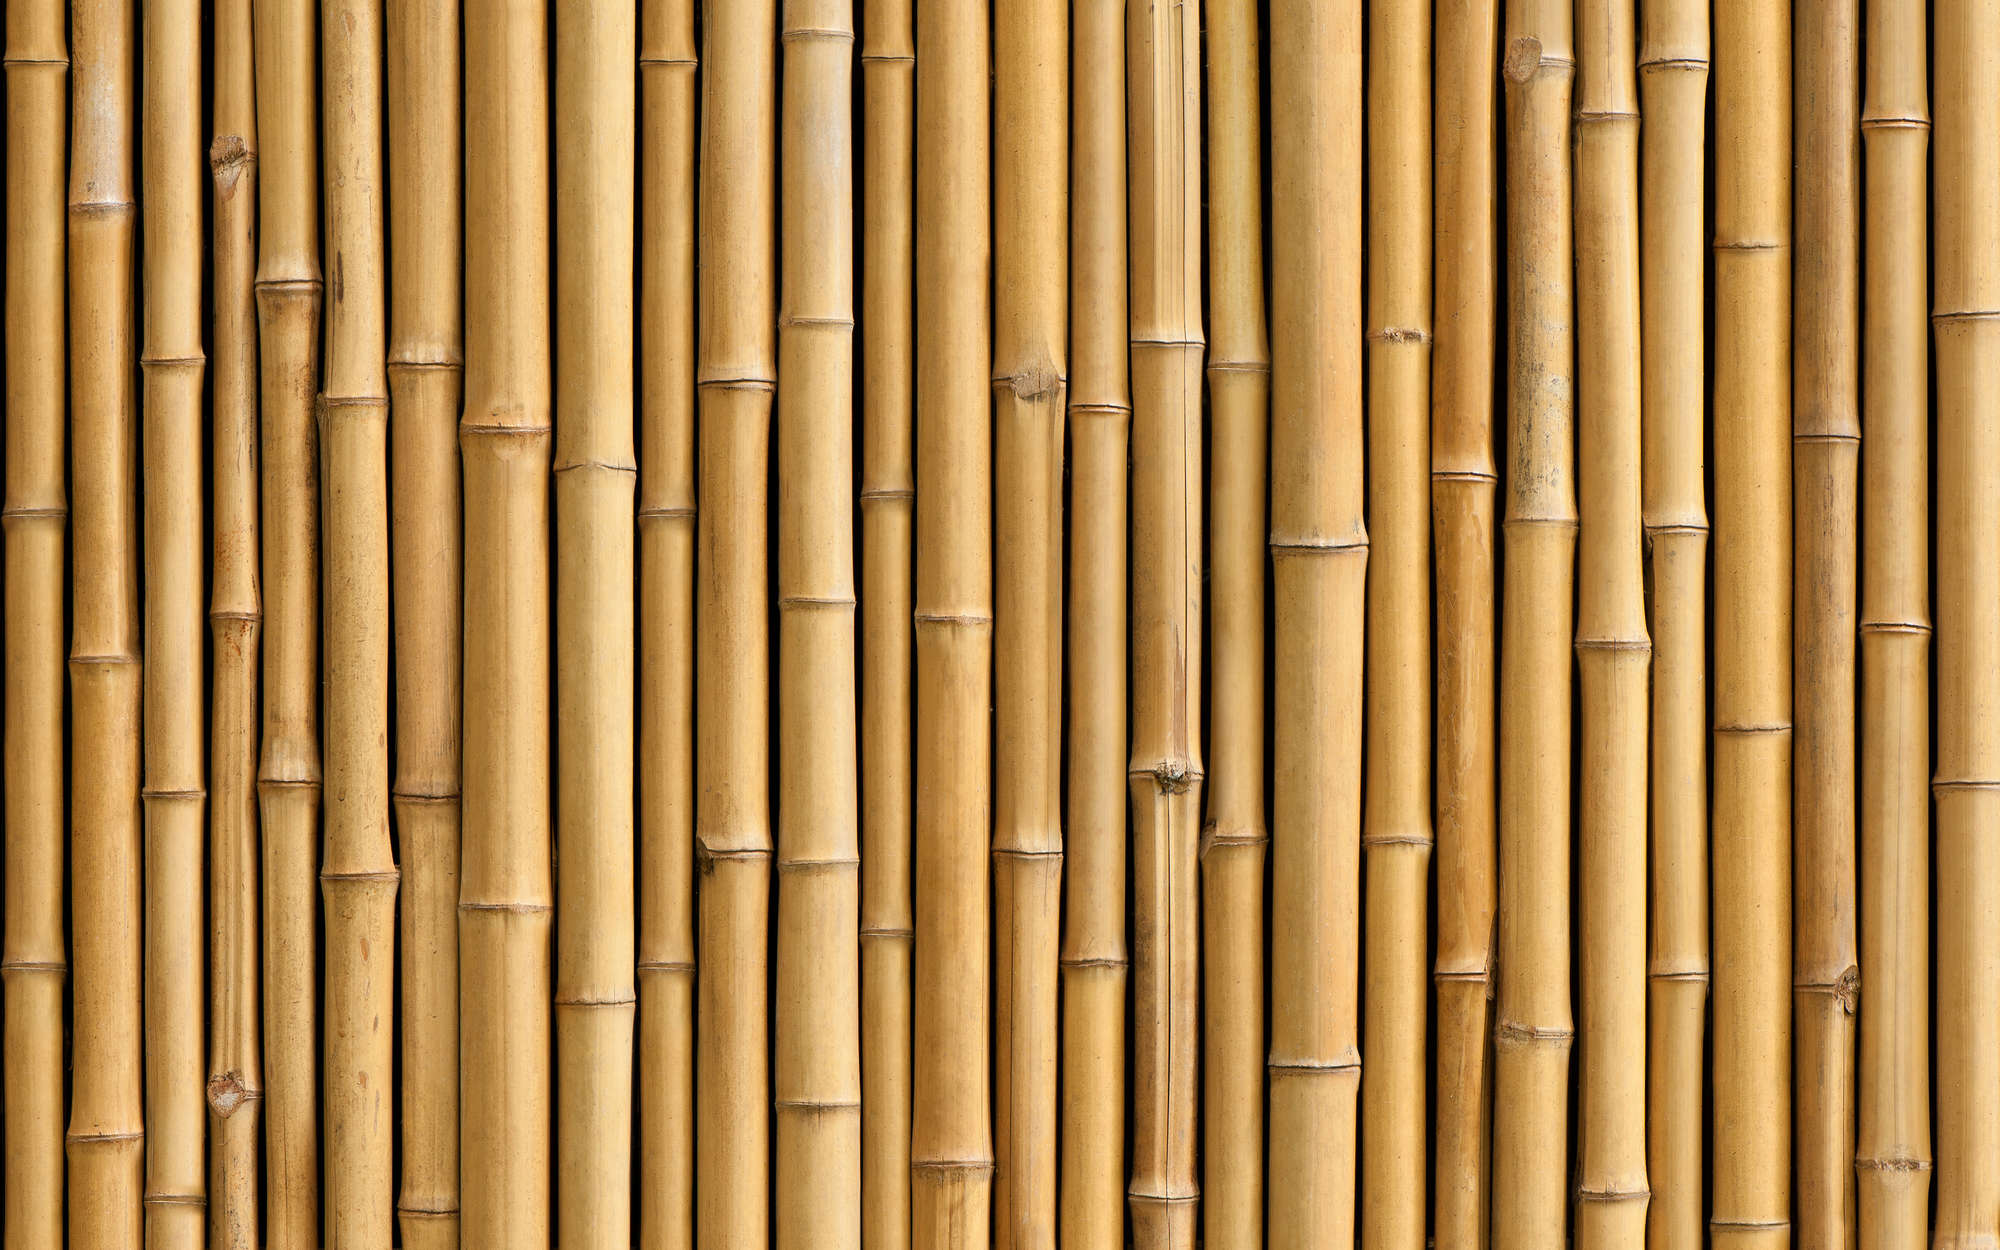             Bamboe muurschildering in beige - Pearl Smooth Vliesbehang
        